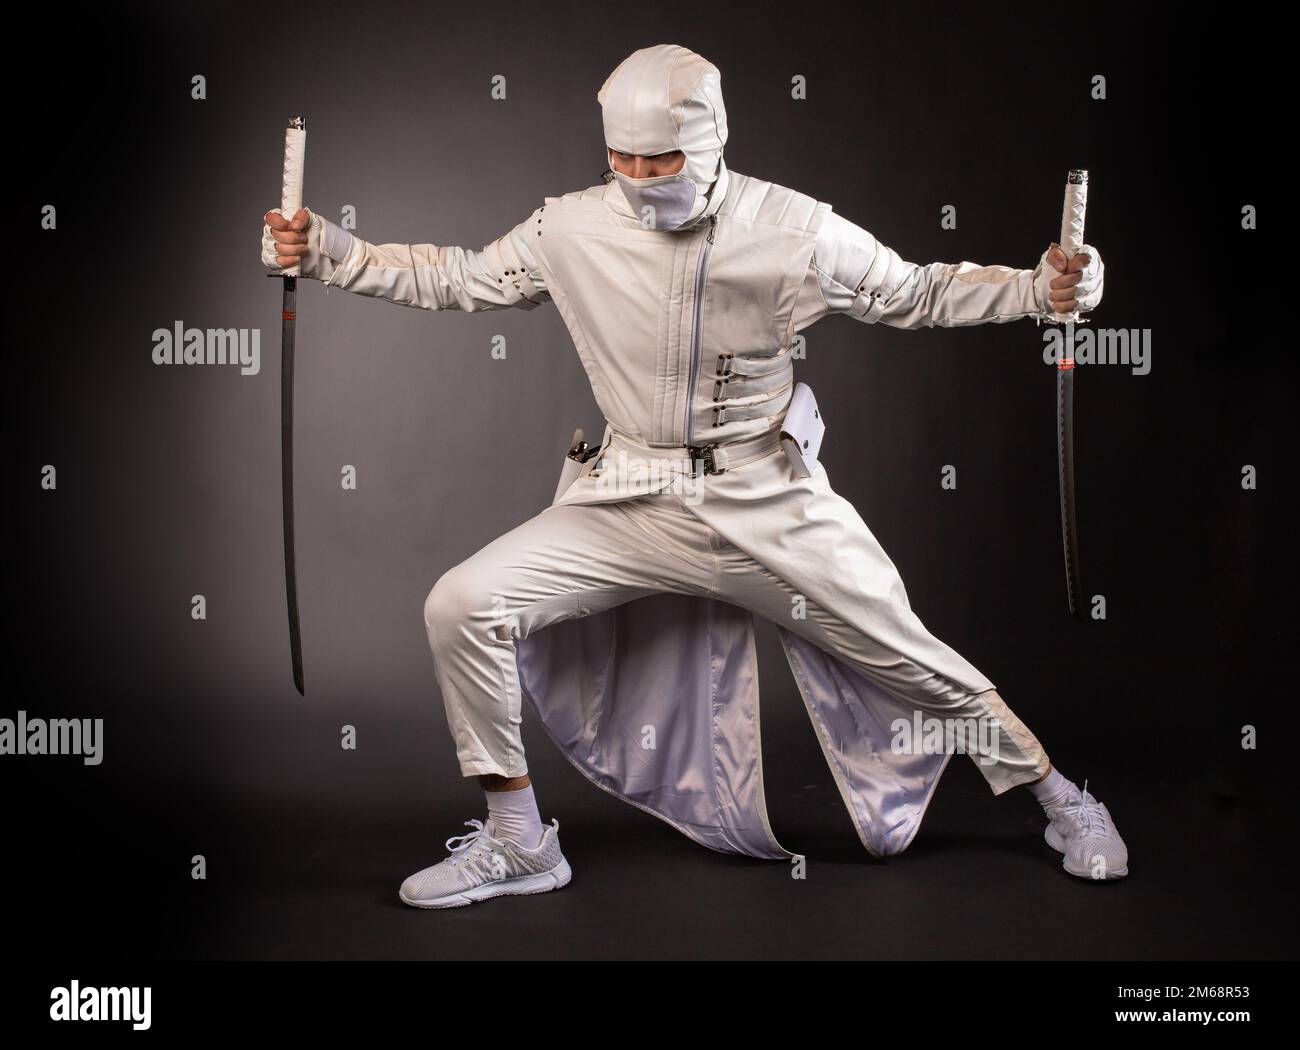 Un homme sous la forme d'un ninja de combat pose avec deux épées sur un fond noir Banque D'Images